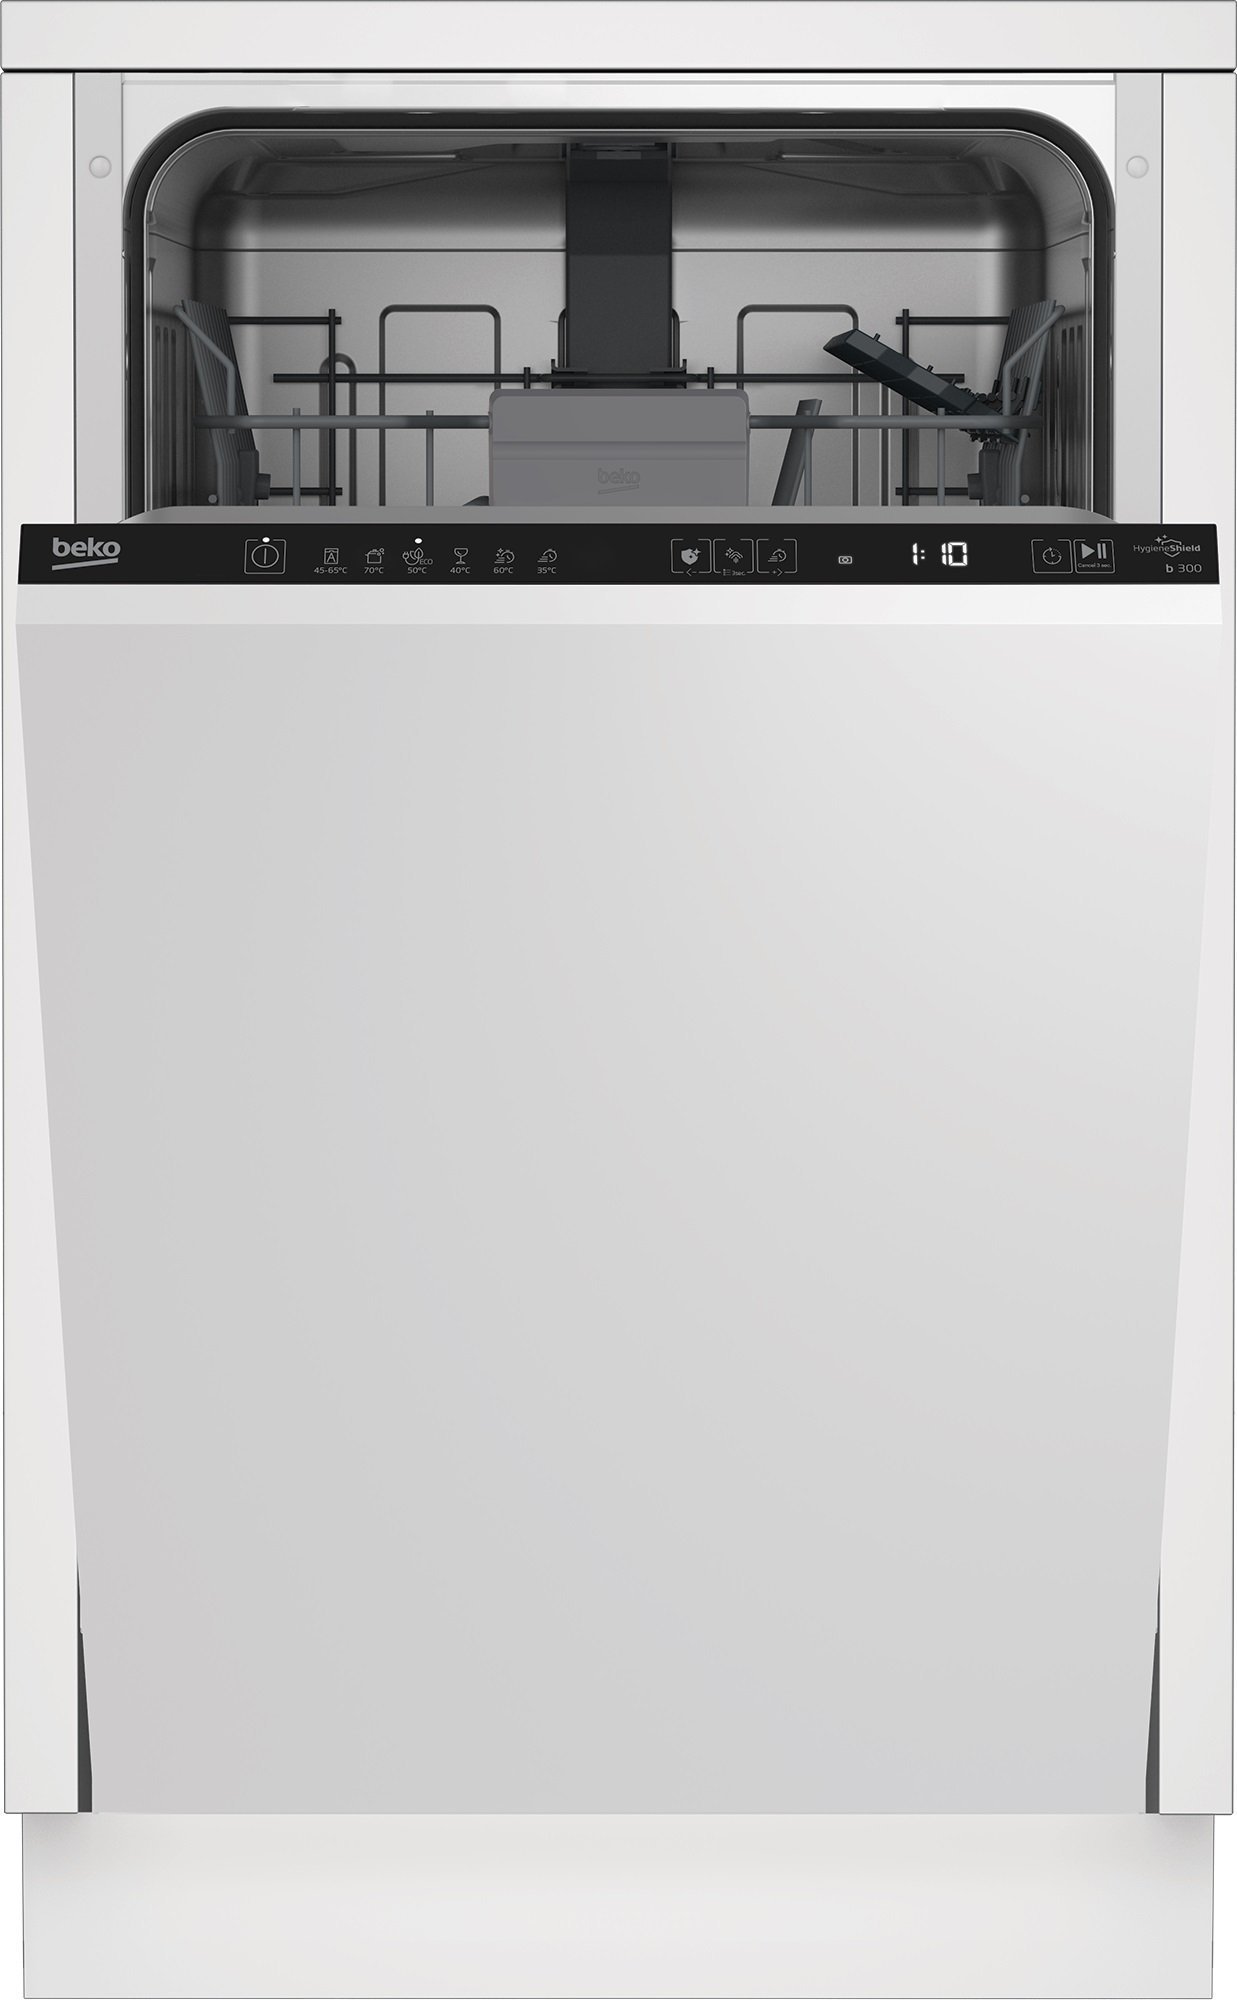 Masini de spalat vase incorporabile - Mașina de spălat vase Beko BDIS36020,10 seturi,47 dB,44,8 cm